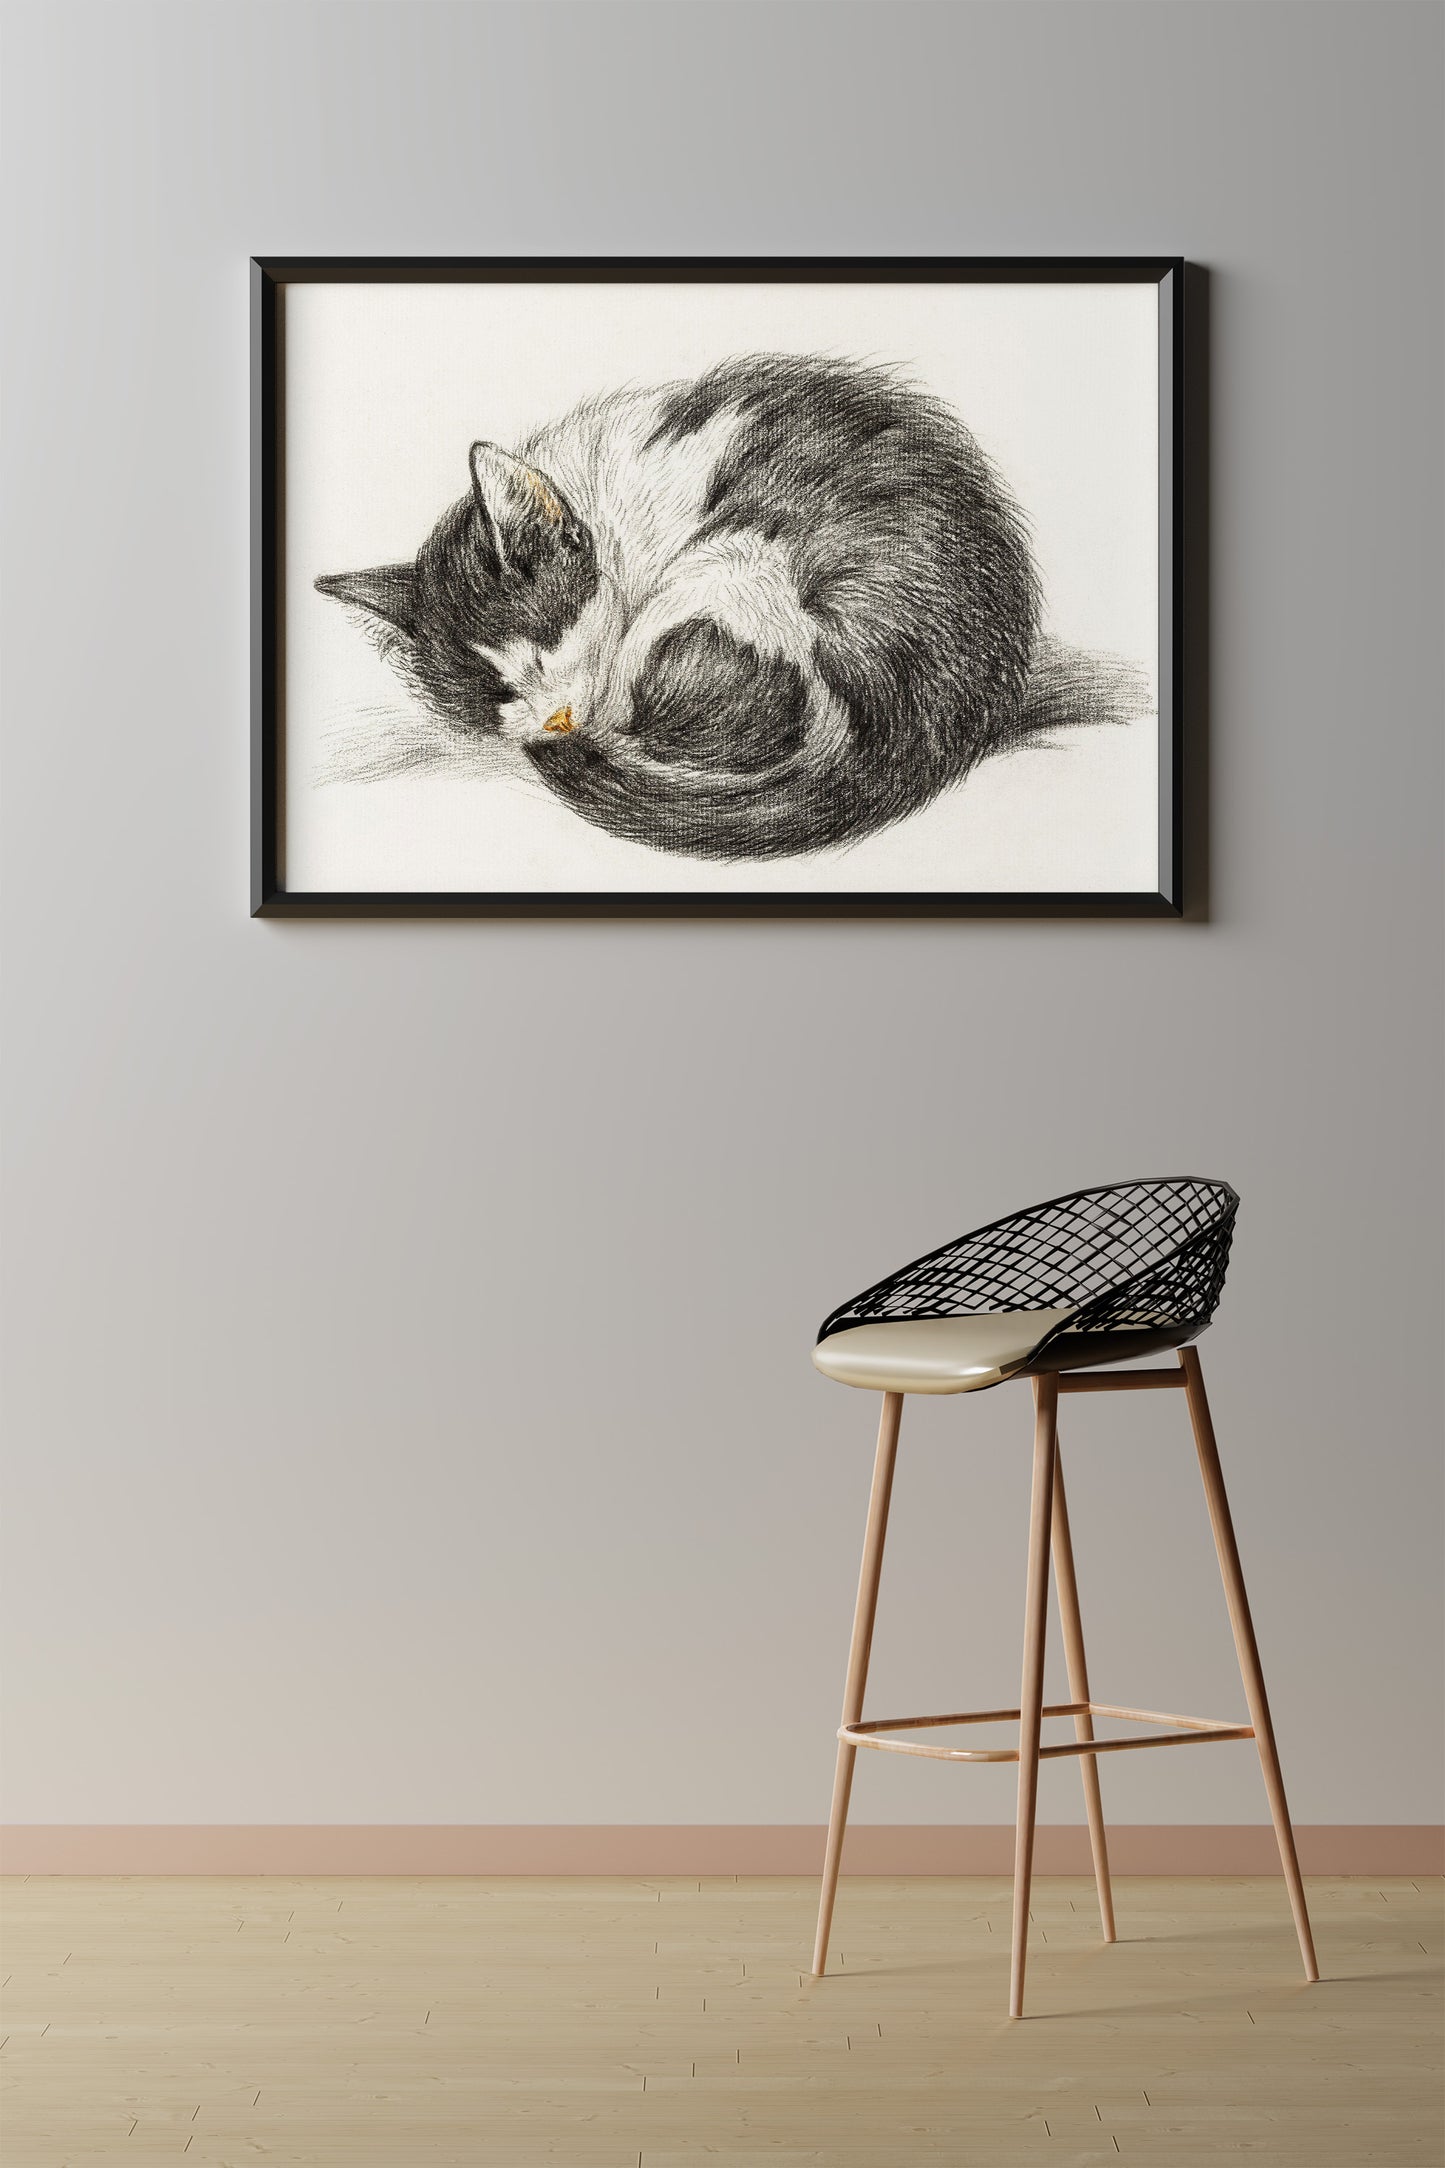 Rolled Up Lying Sleeping Cat by Jean Bernard